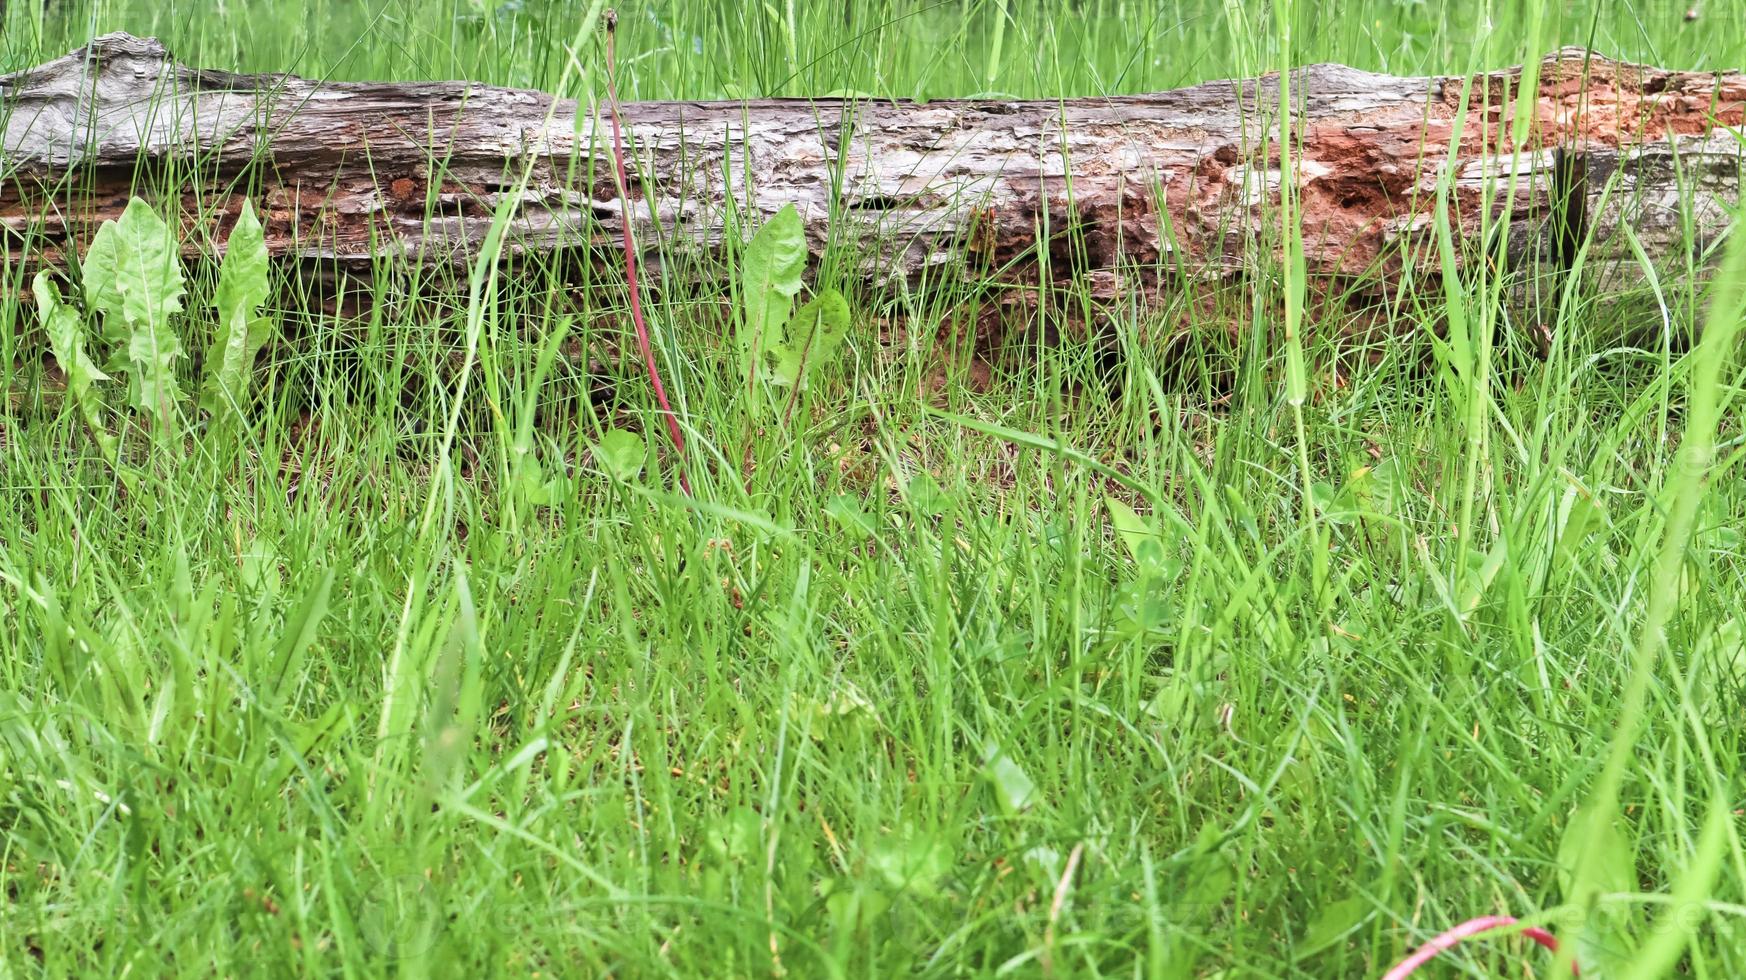 antiguo nombre de usuario green grass. viejo tronco seco en la hierba se encuentra foto